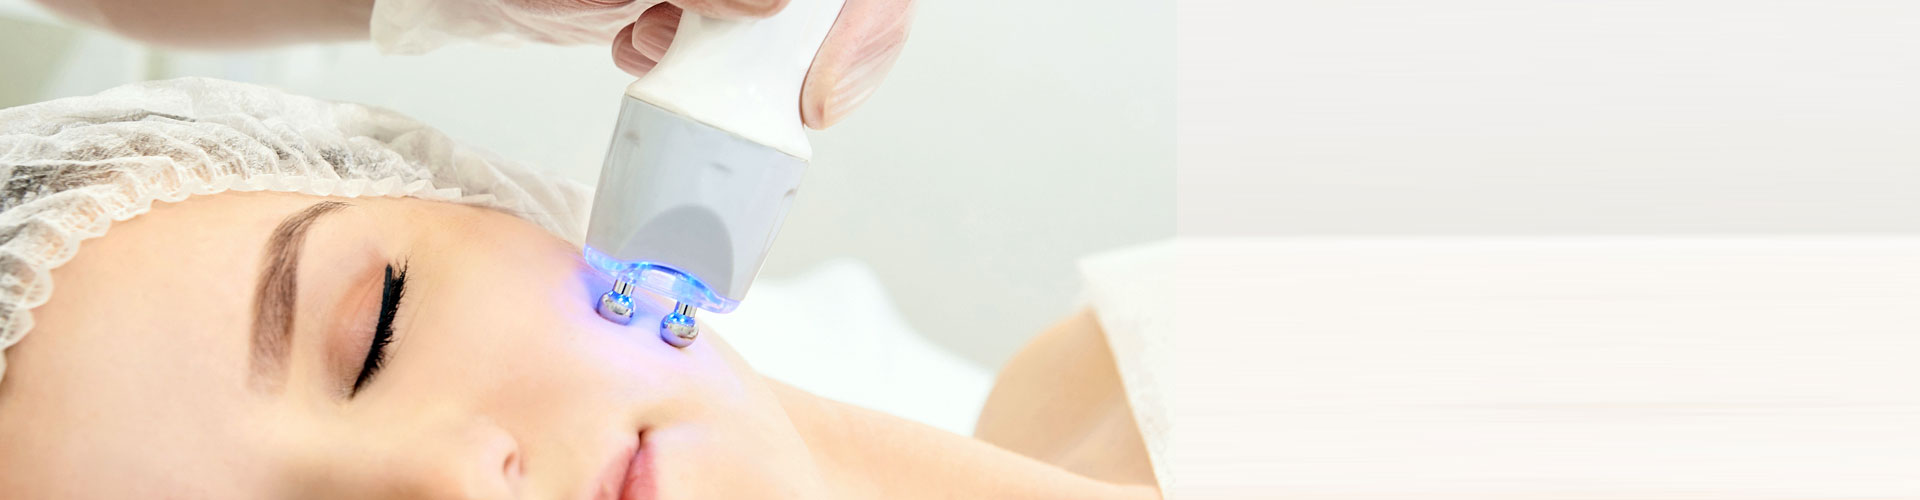 Crème conductrice pour traitements de radiofréquence visage et corps